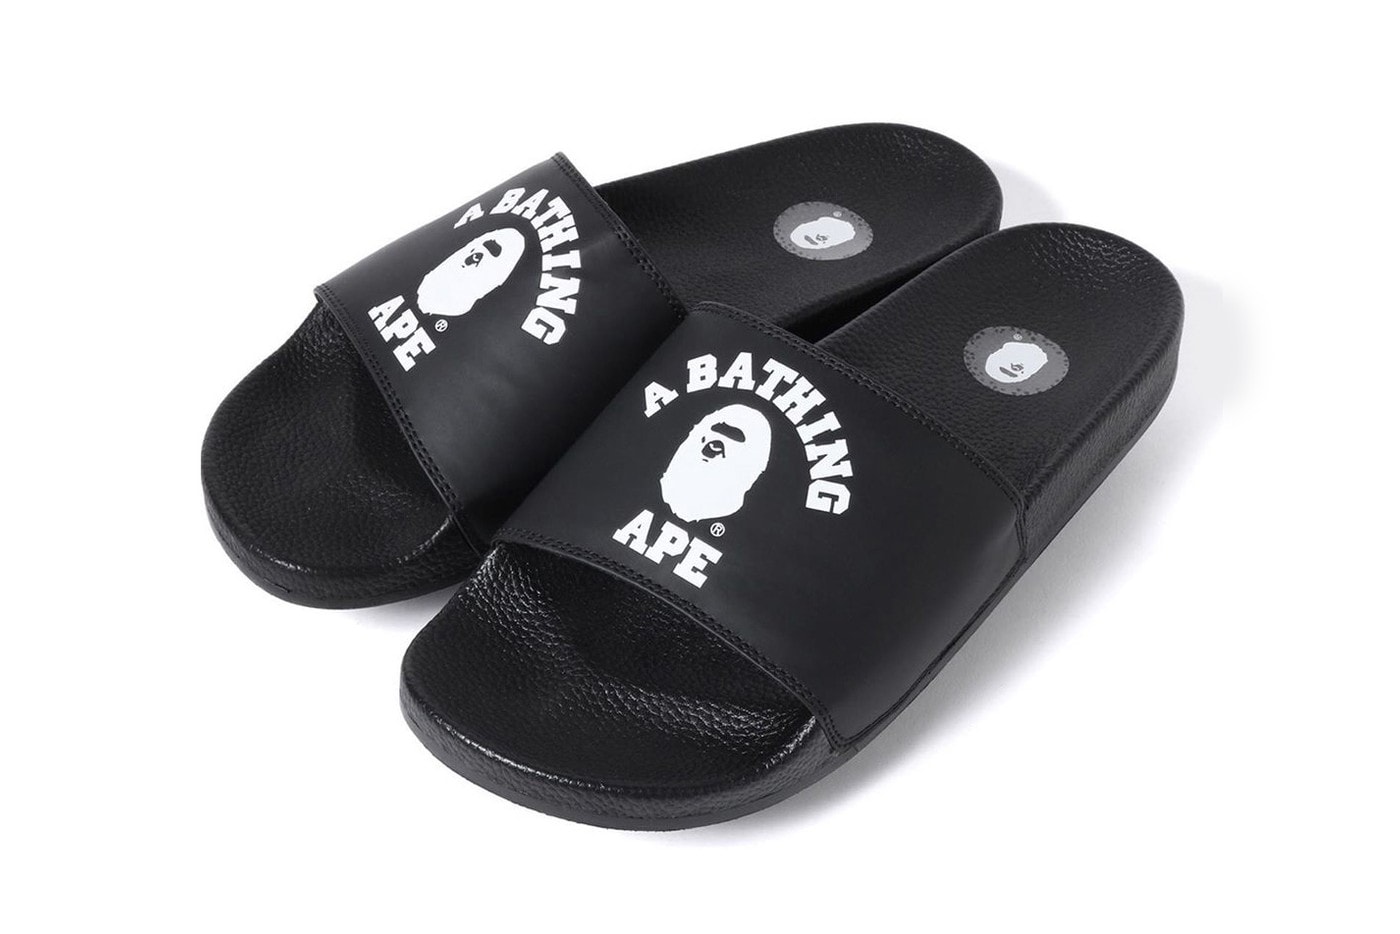 迎接夏季 − A BATHING APE® 全新 BAPESTA 樣式拖鞋發佈